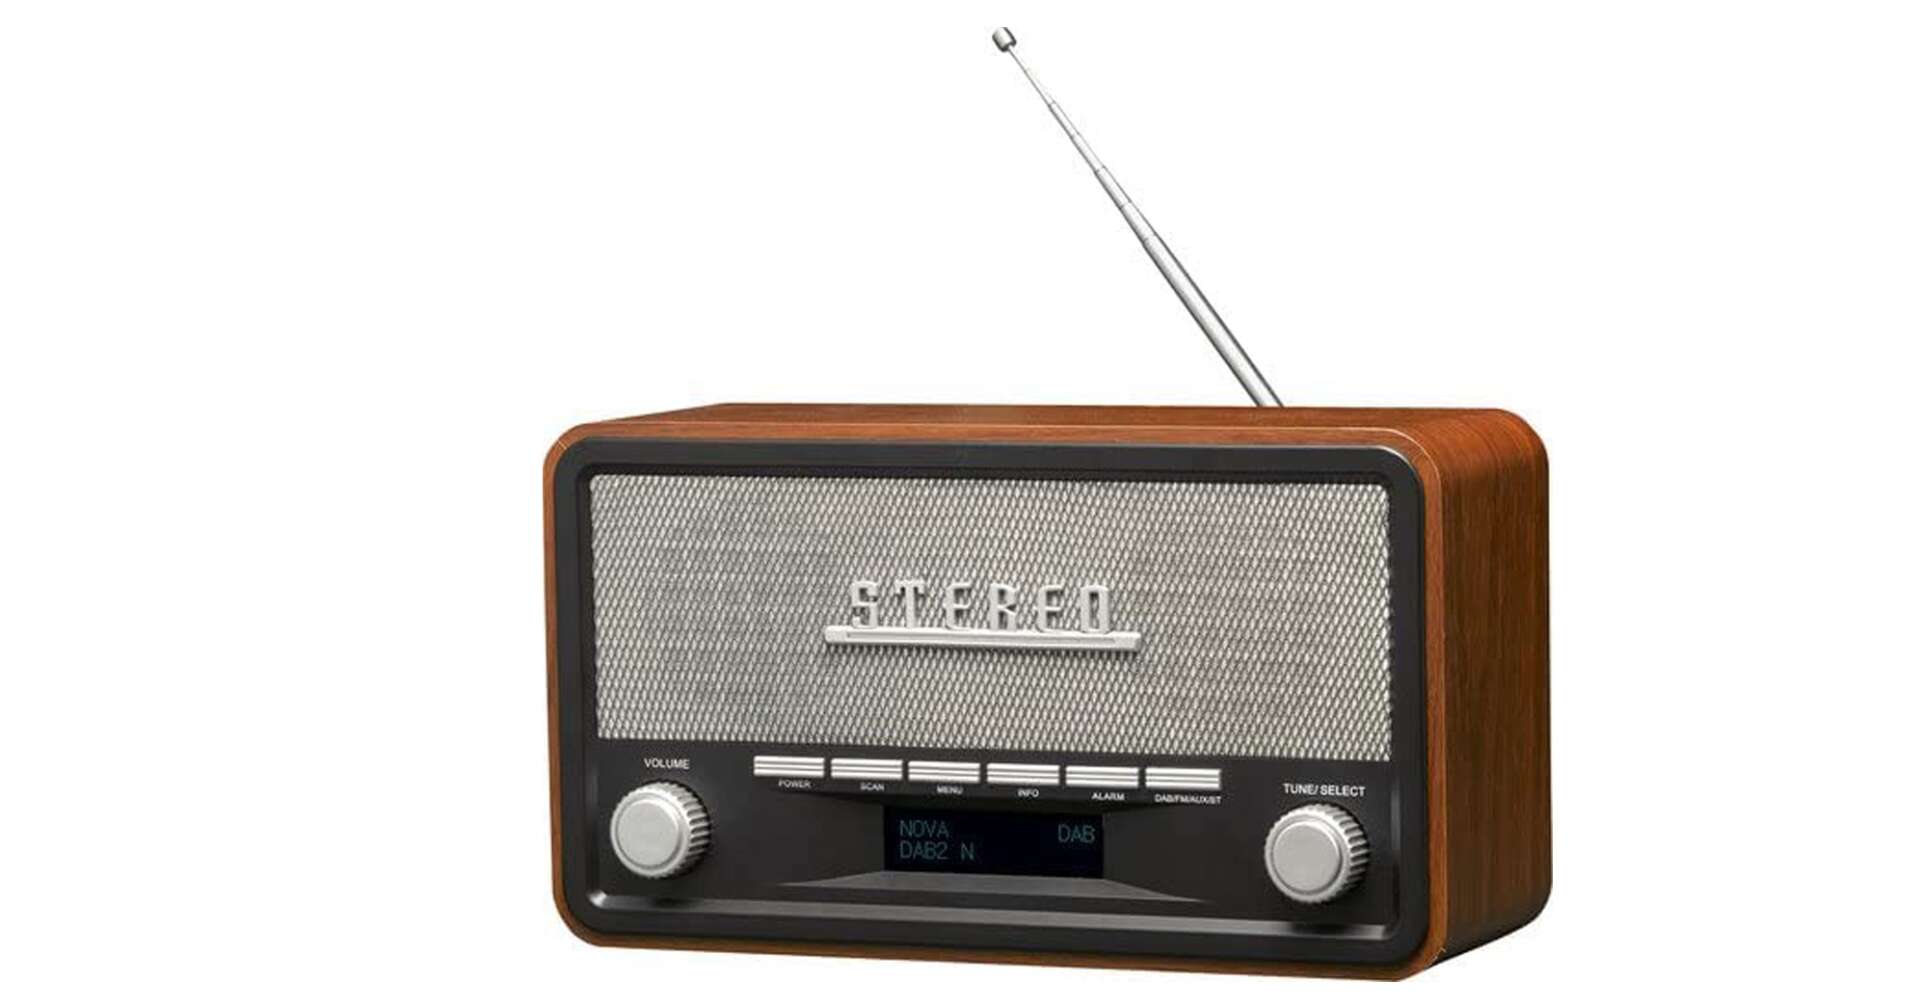 Bild eines Retro Radios von Denver